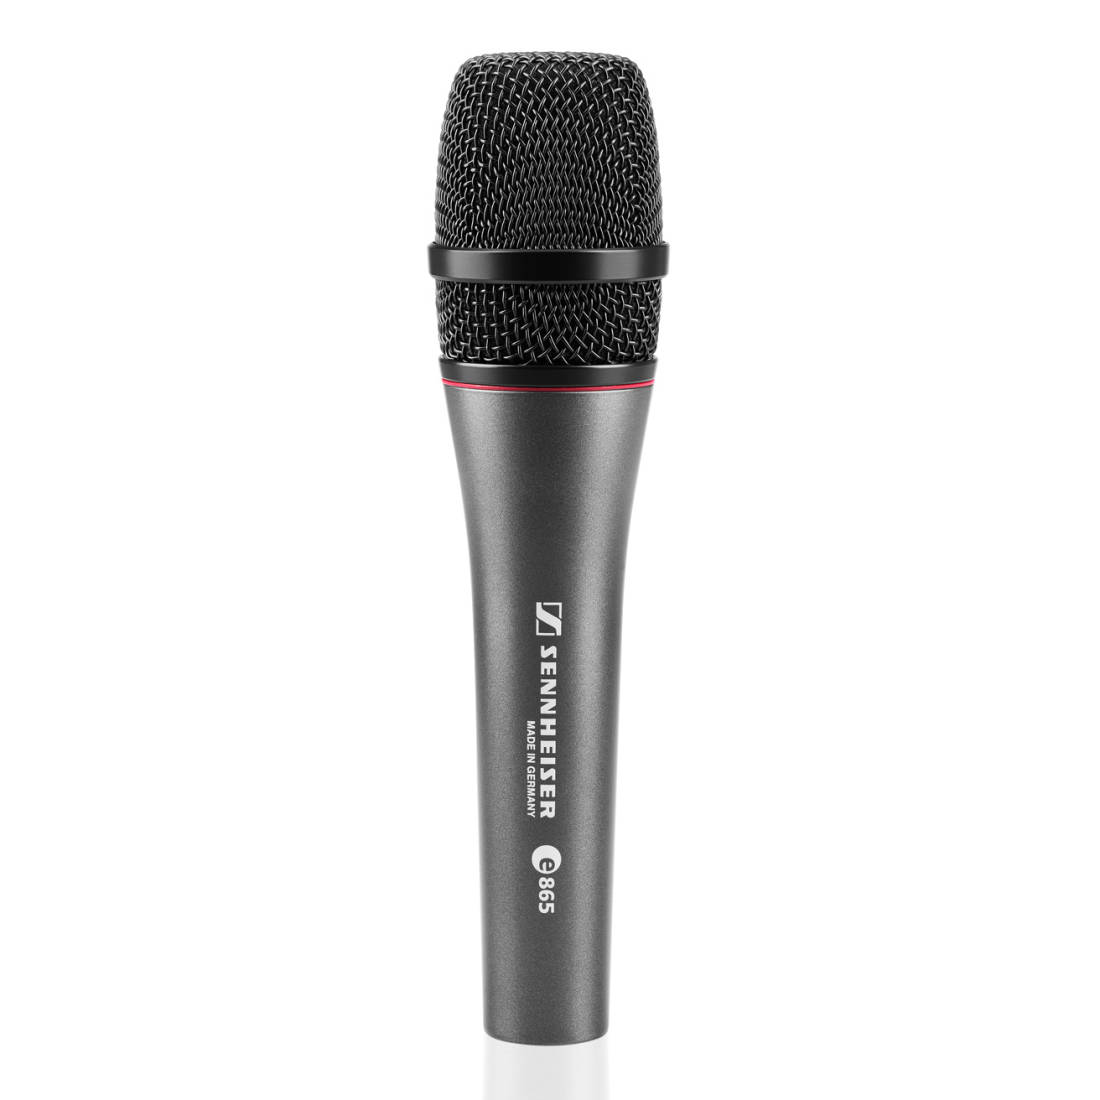 e 865 Evolution Condenser, Super-cardioid Microphone